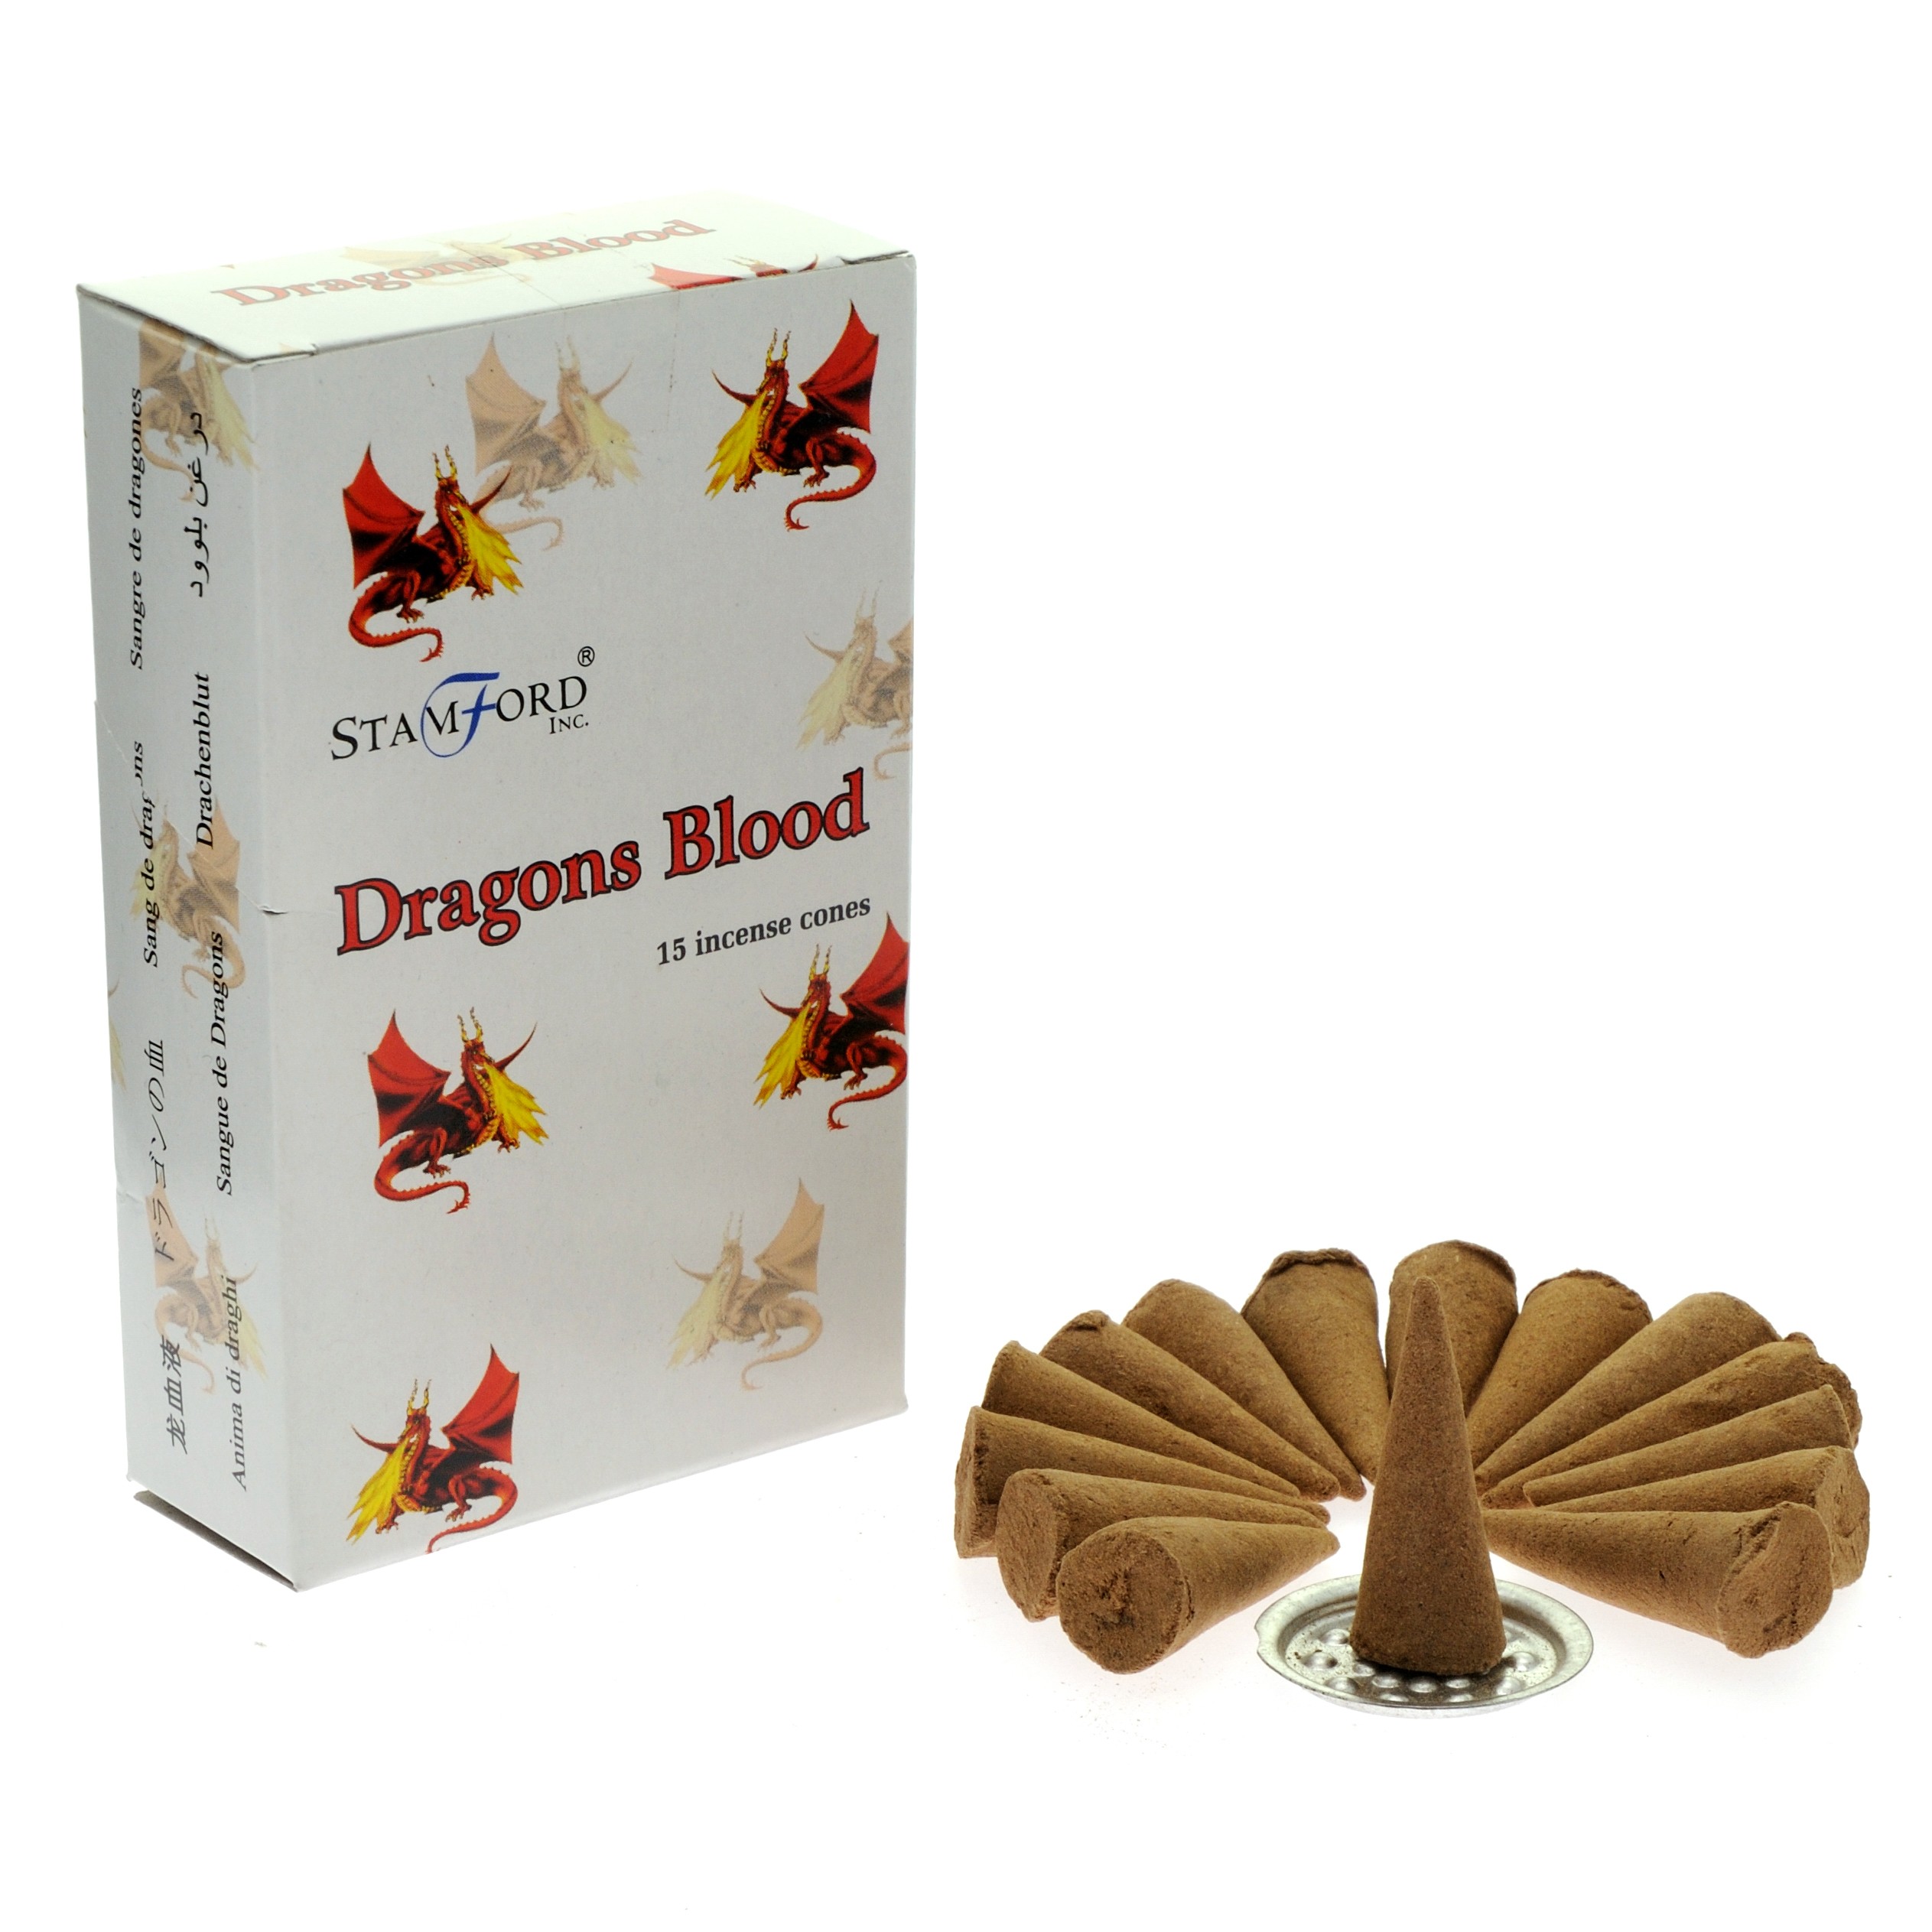 5 x Packs Premium Incense Cones - Dragon's Blood